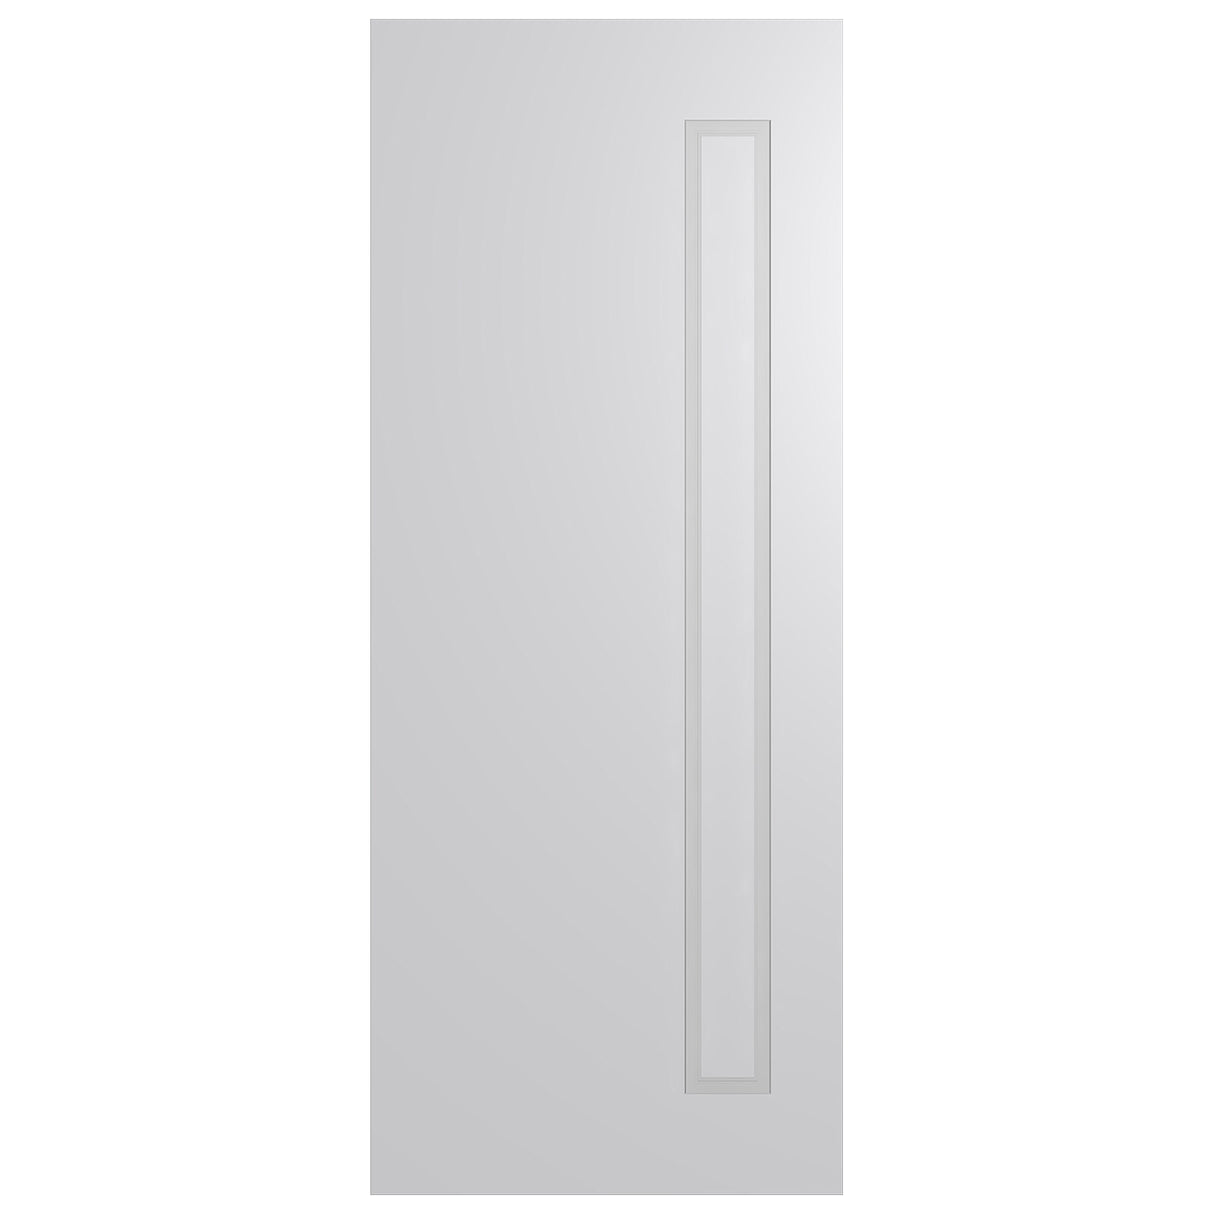 Sorrento 1 Internal Door SOR1-2040 range Installed package